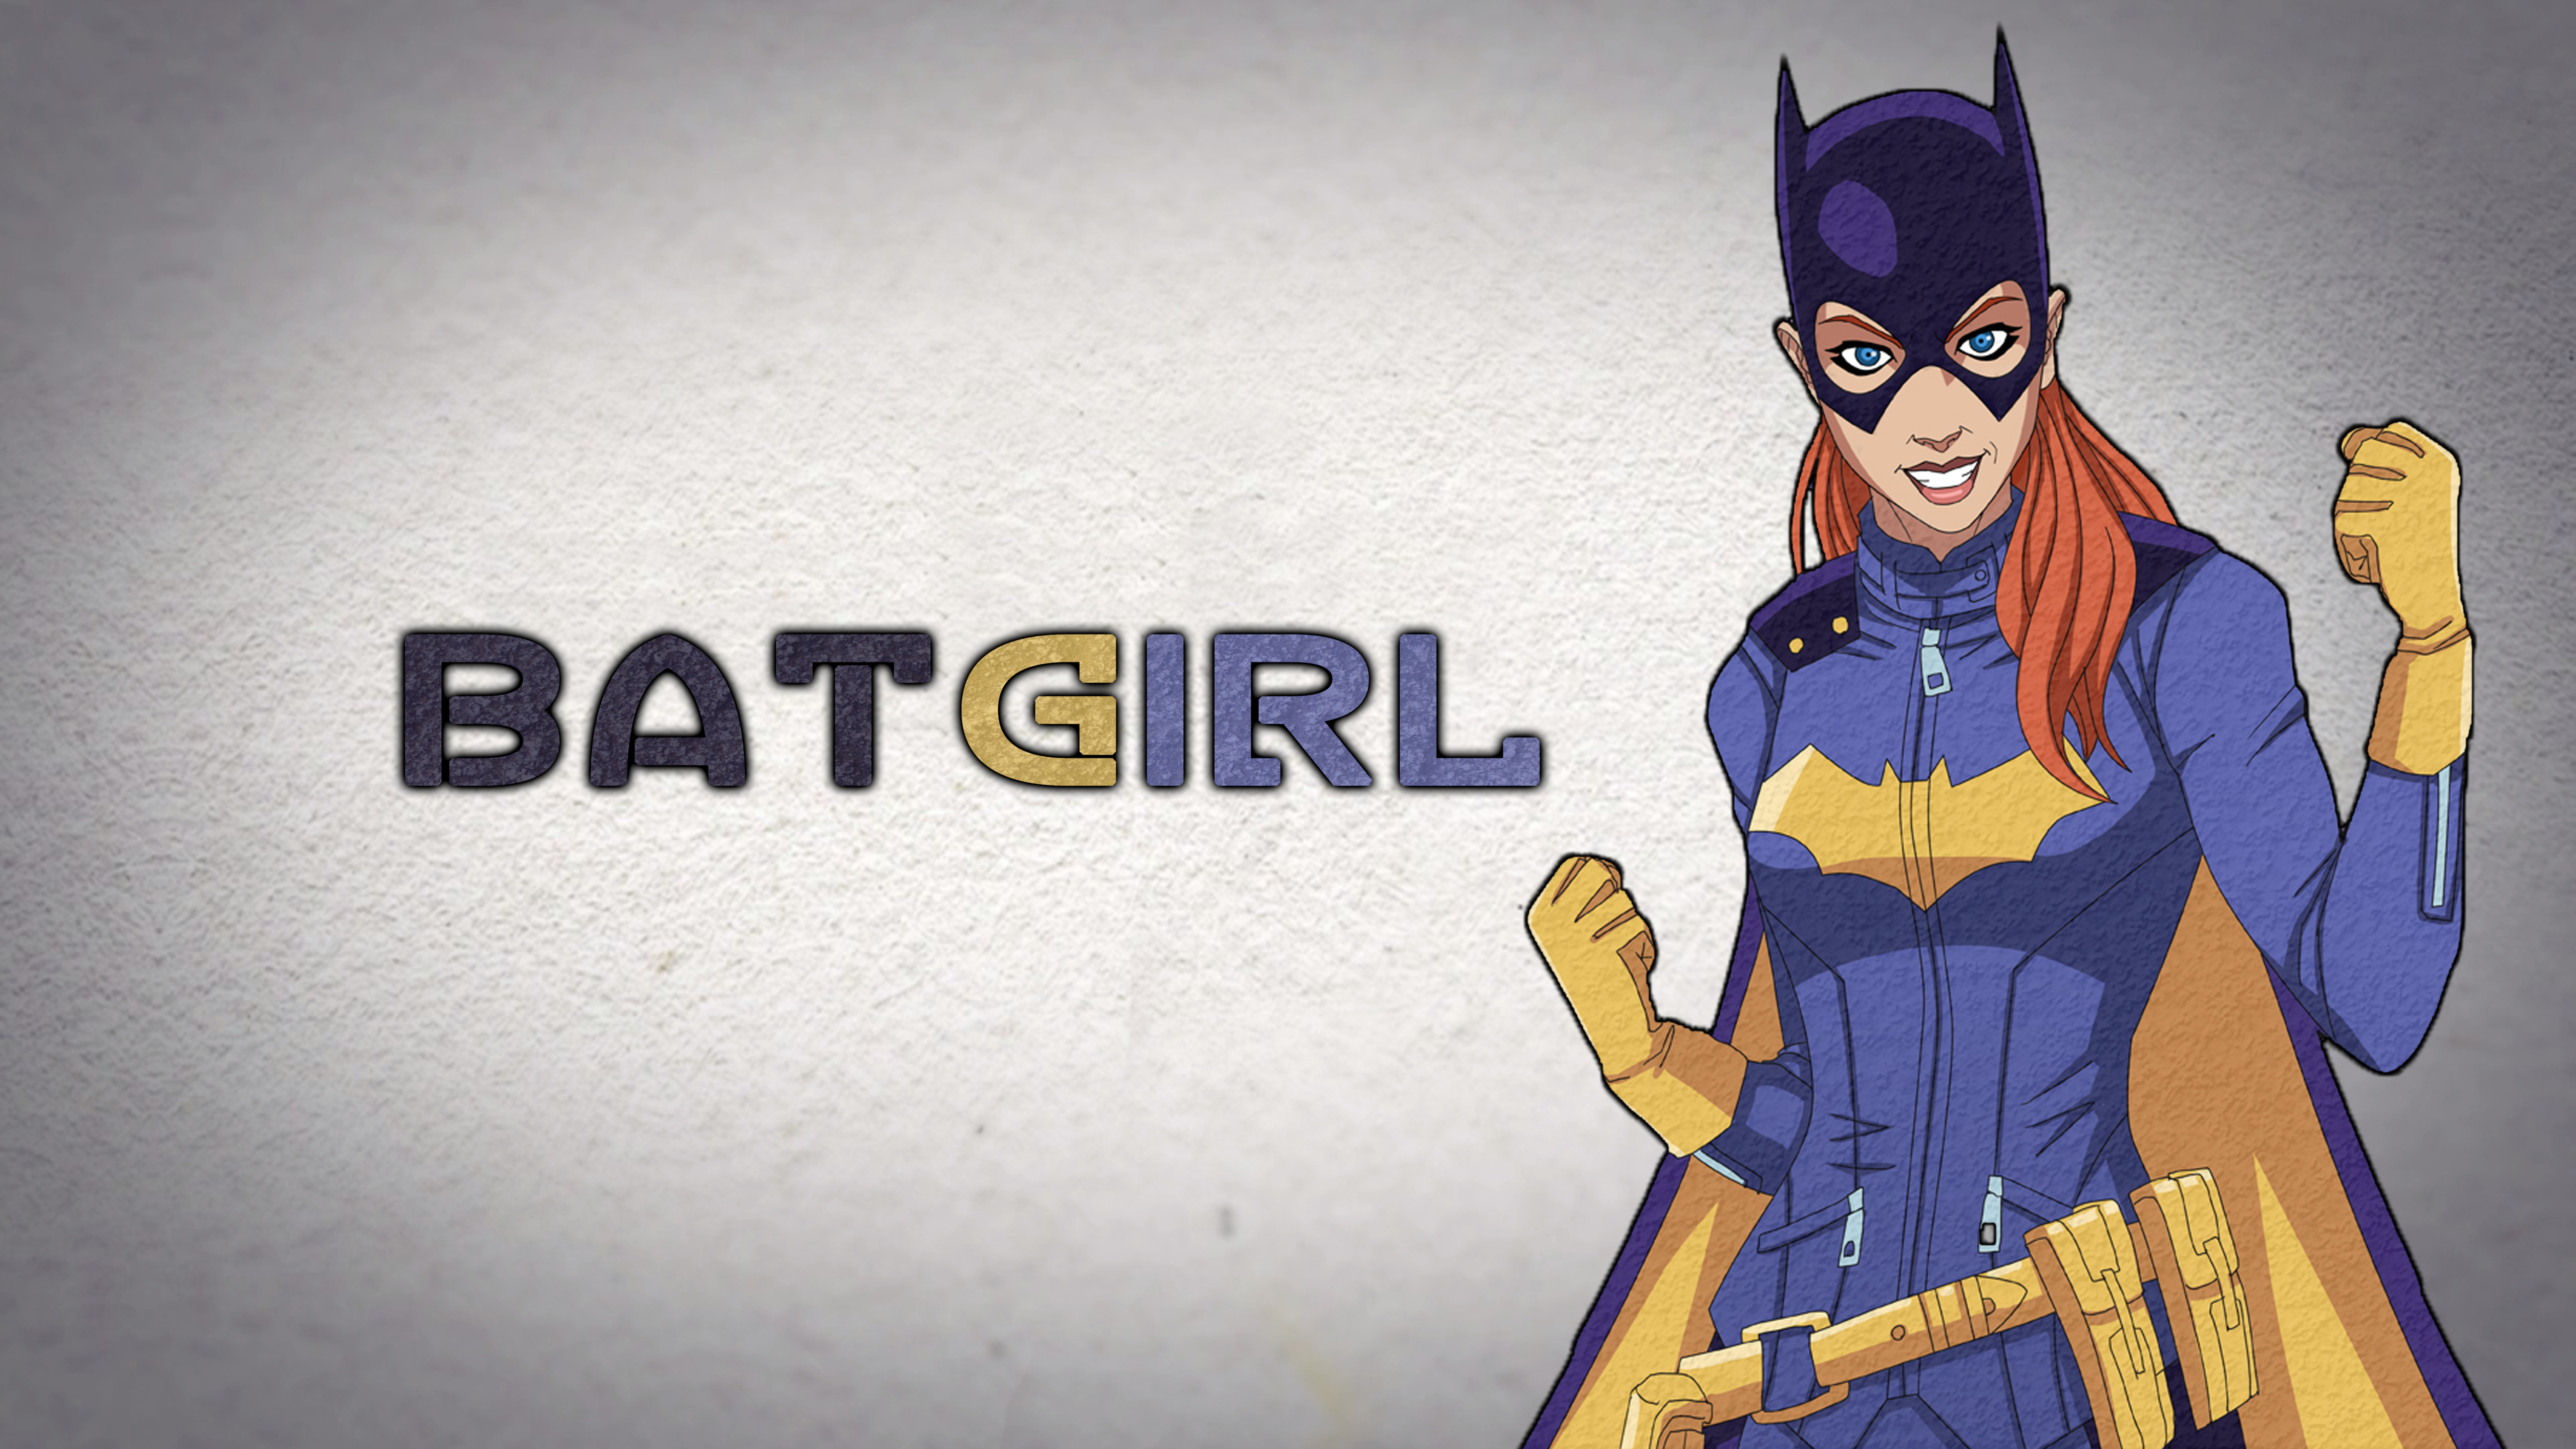 Batgirl Fan art 5K Wallpapers